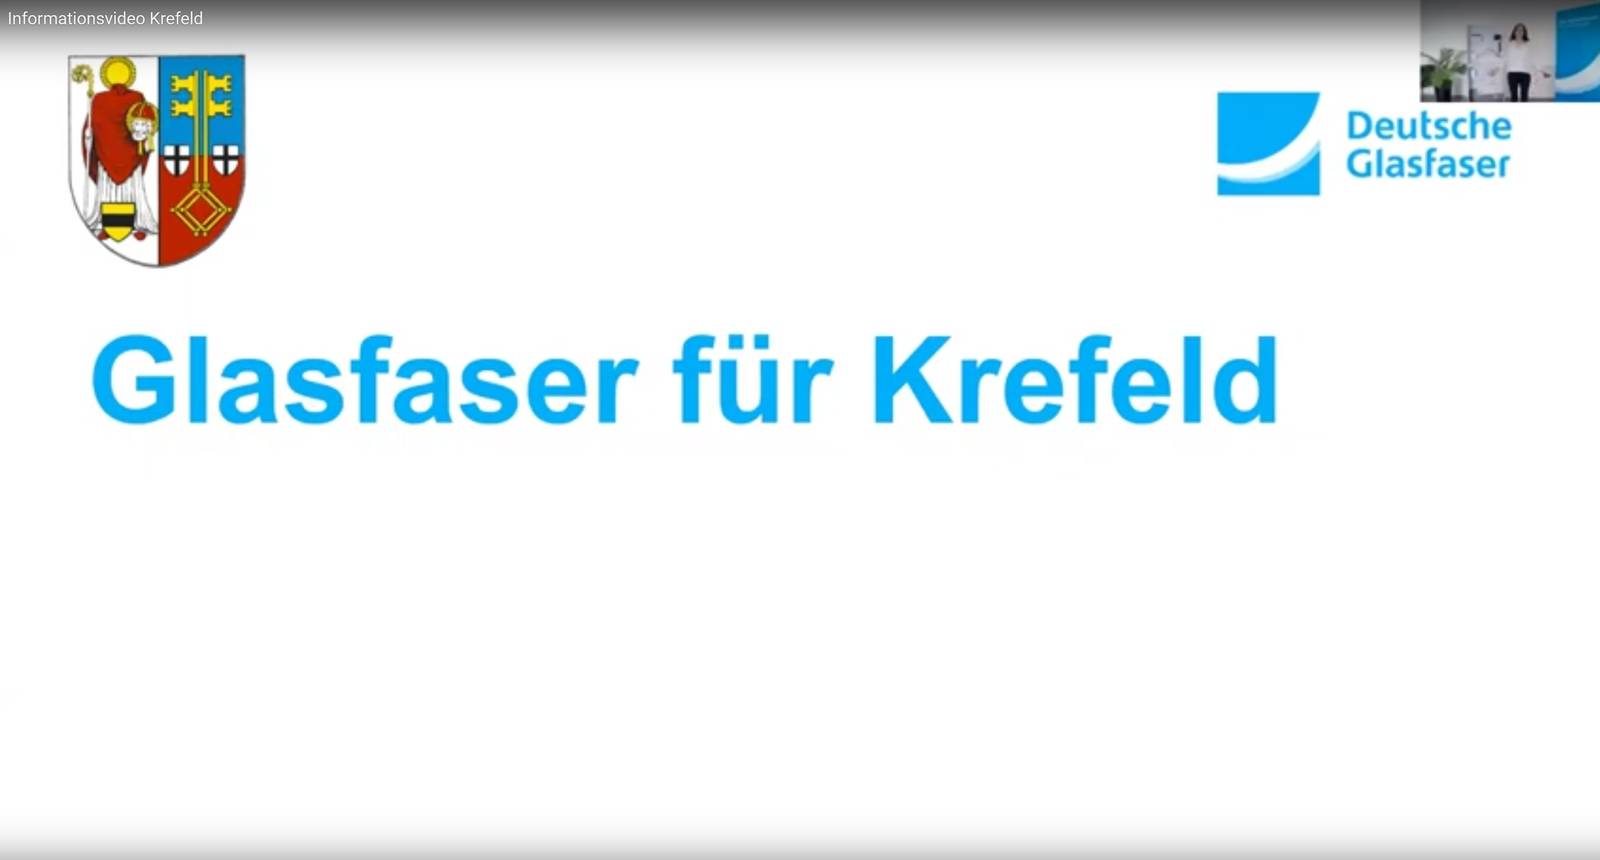 Glasfaser für Krefeld in 8:30 Minuten erklärt !